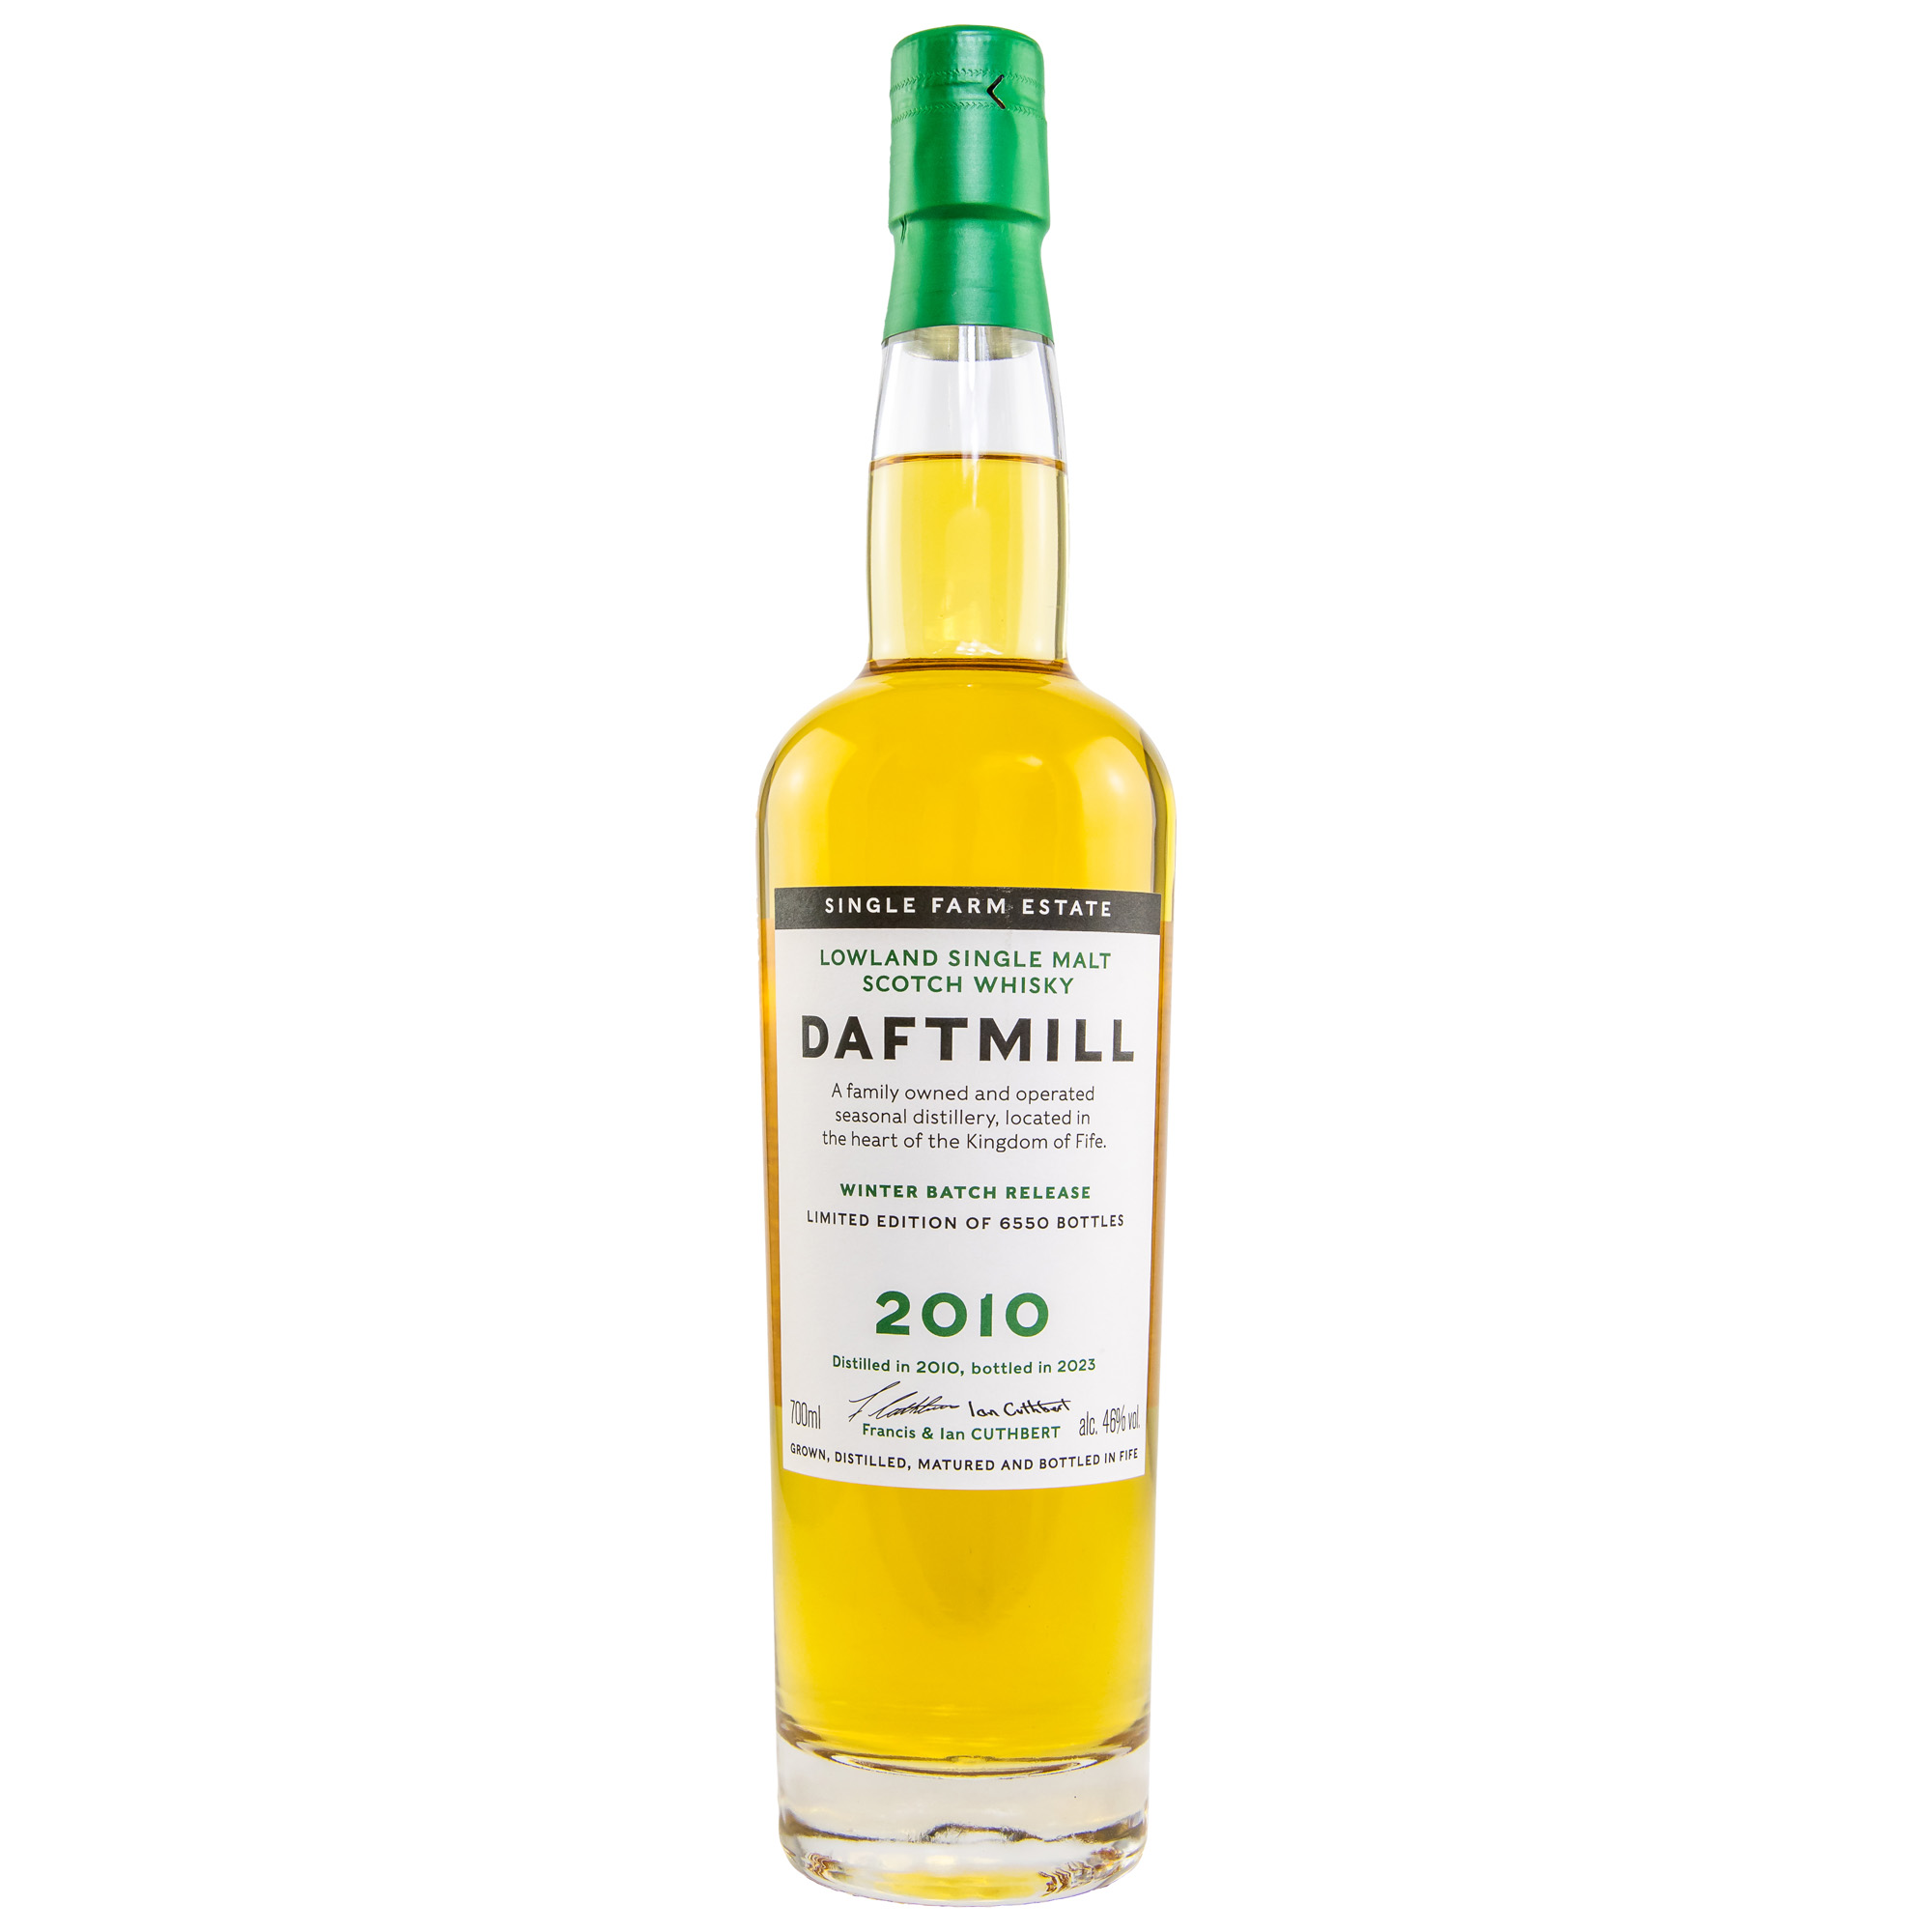 Daftmill 2010/2023 Winter Batch Release